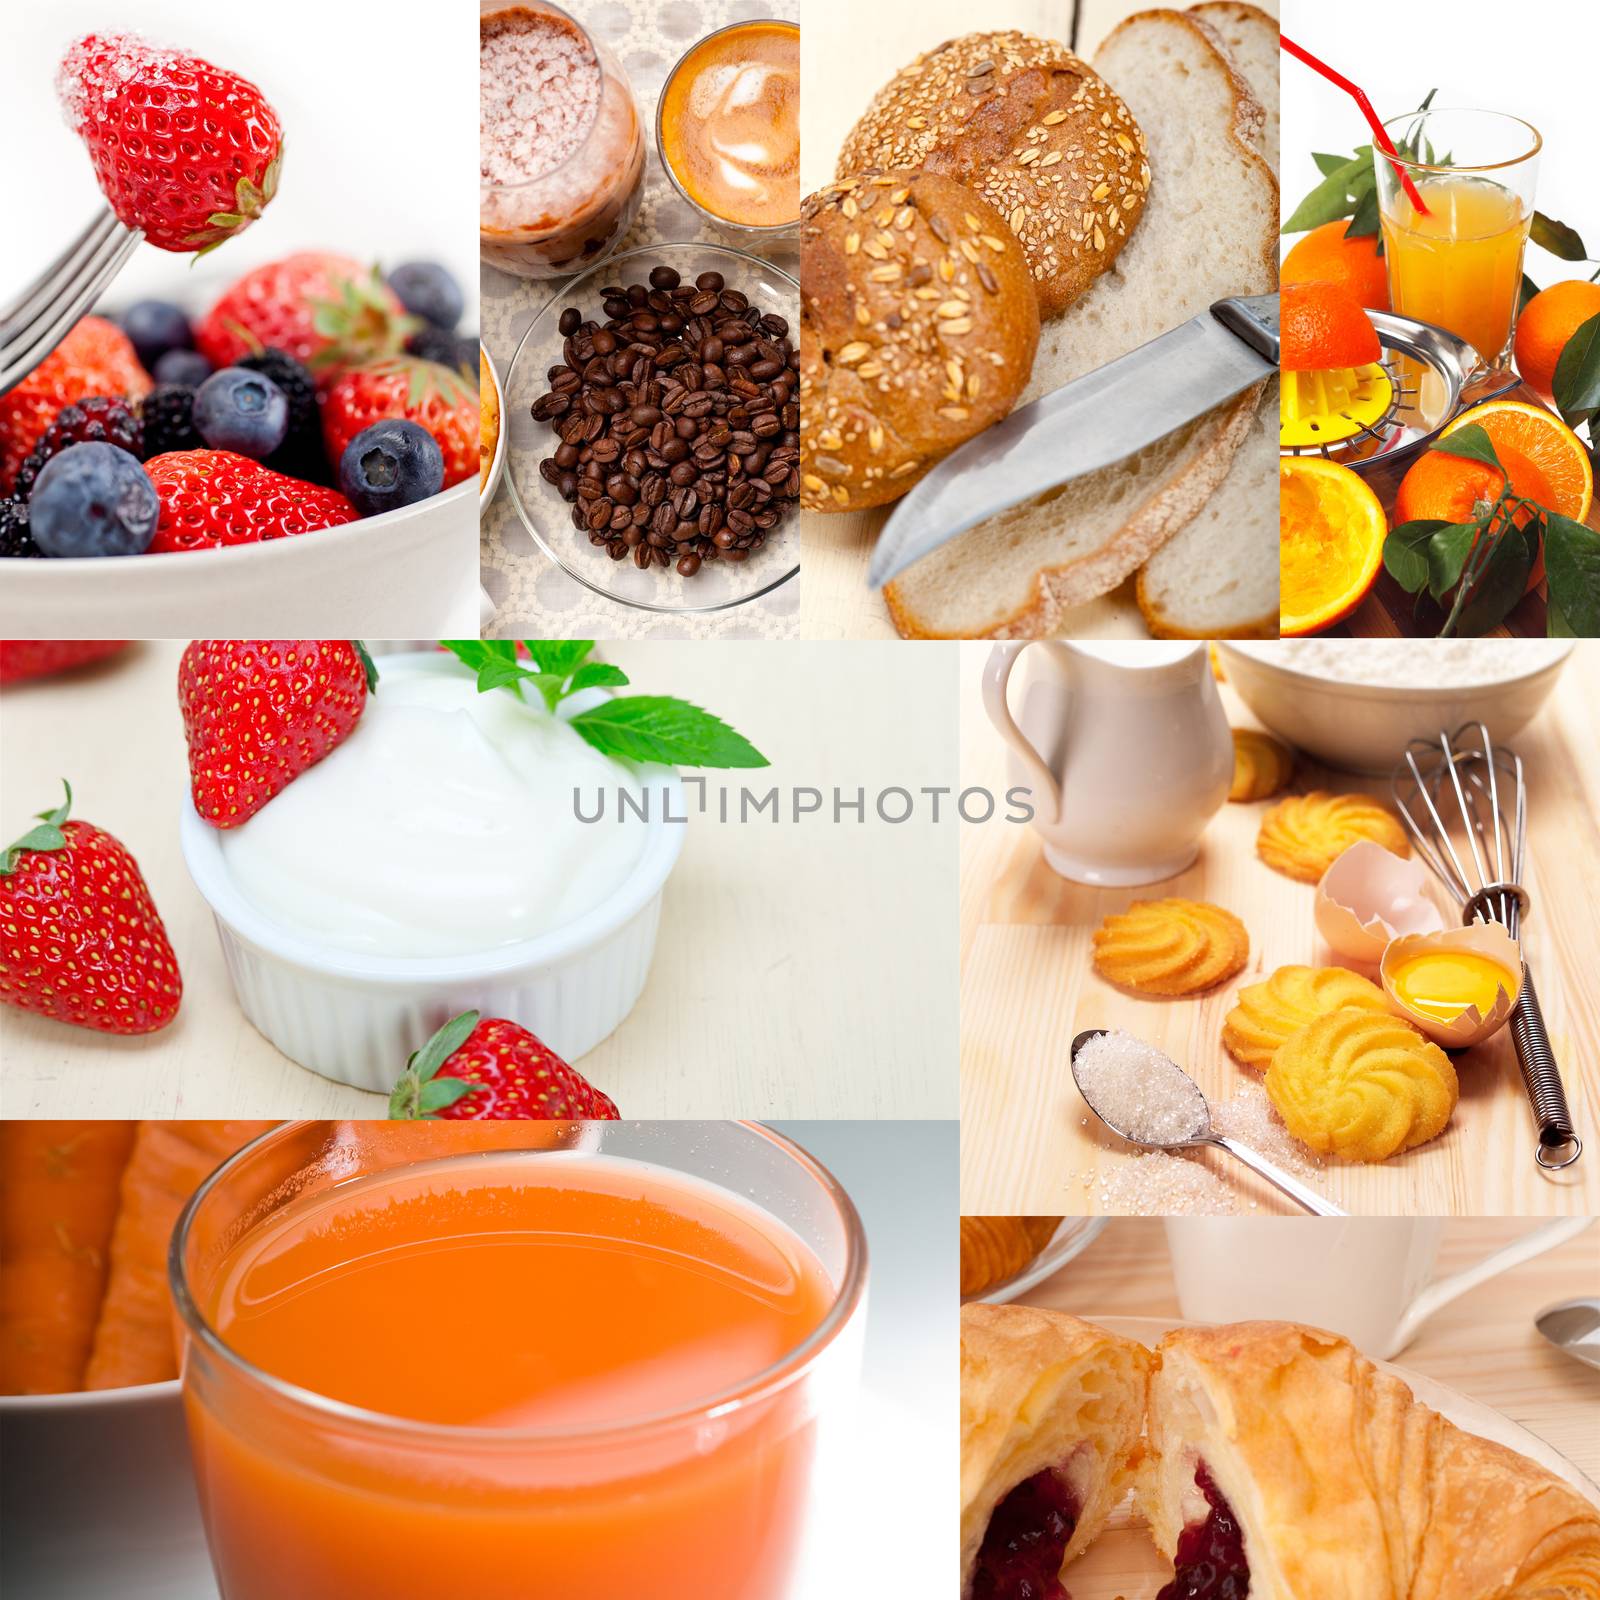 ealthy vegetarian breakfast collage by keko64